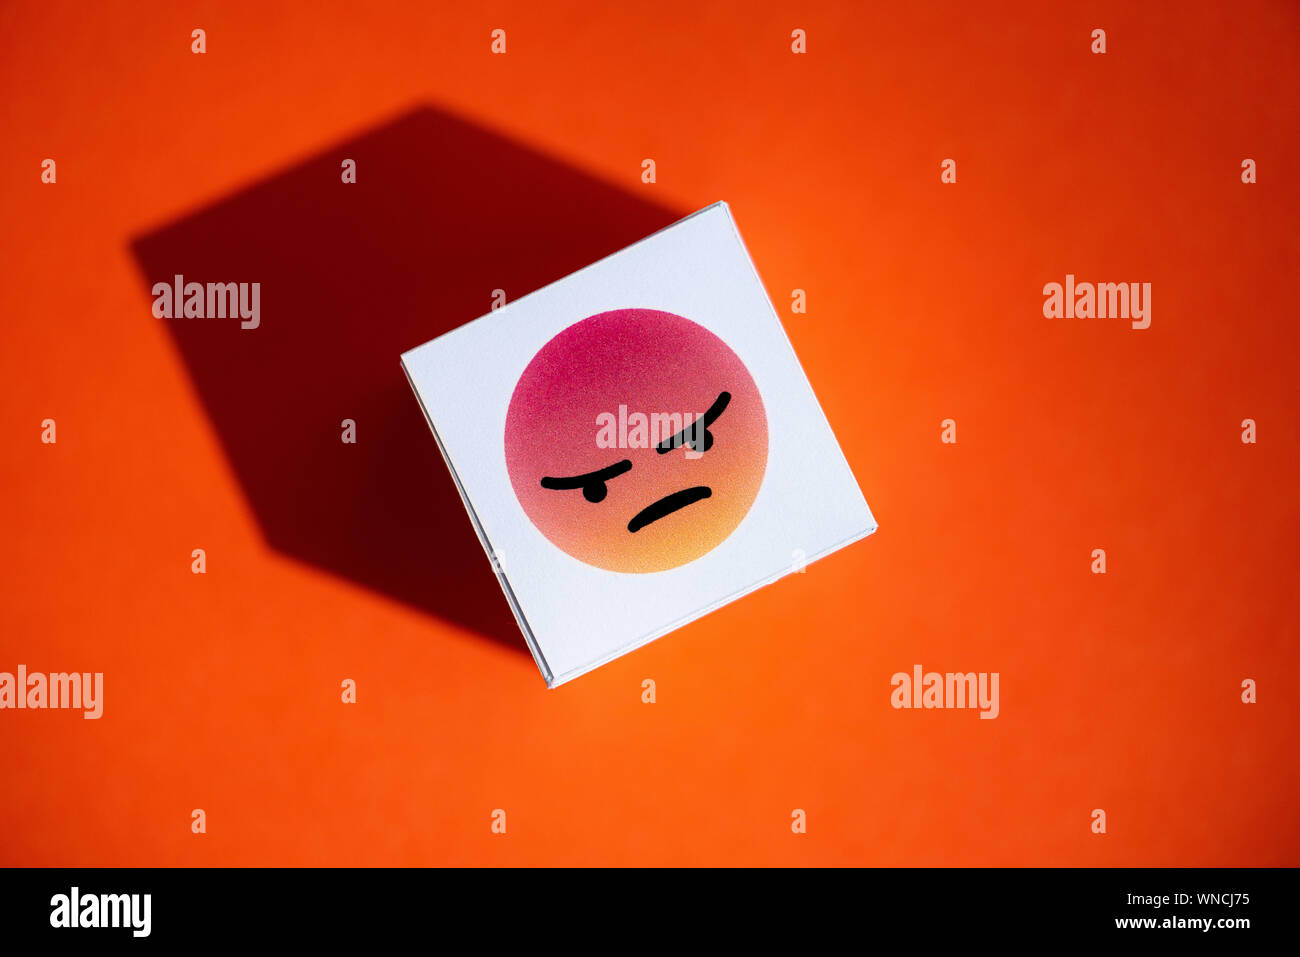 Eine Wut emoji Symbol von Facebook Messenger gedruckt auf ein Papier Kubus, der auf einem orangefarbenen Hintergrund platziert. Stockfoto